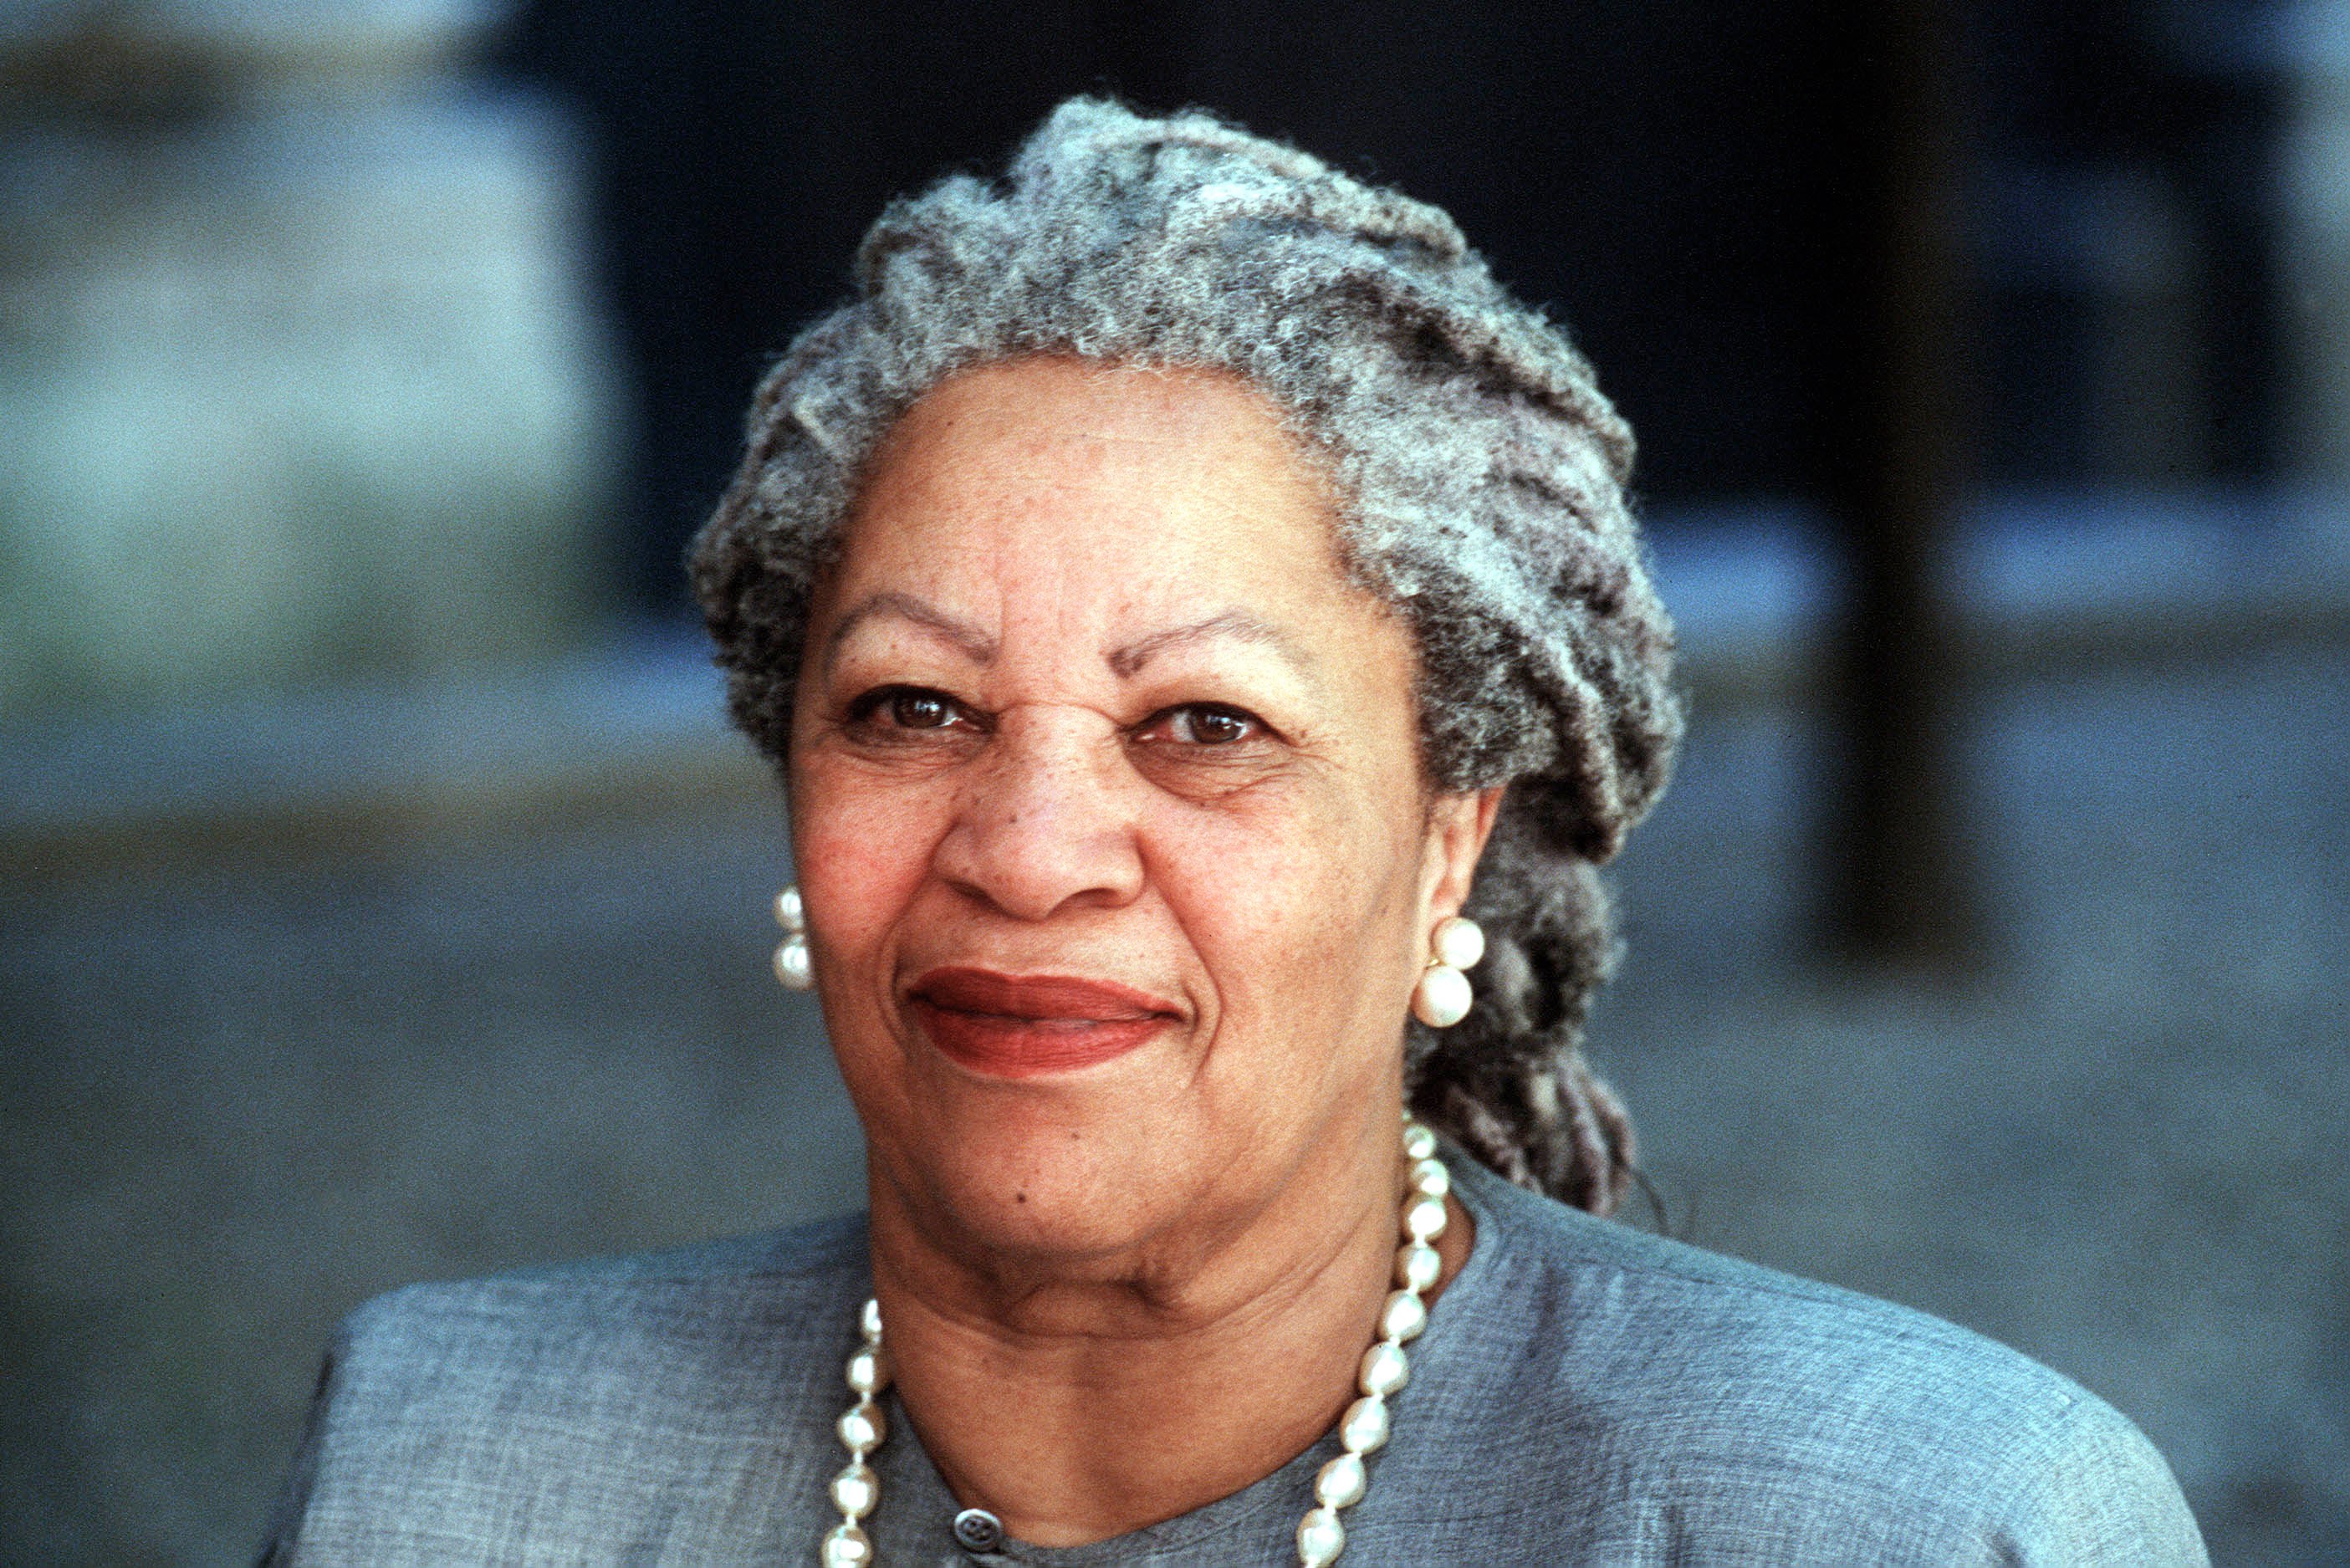 साहित्य के लिए नोबेल सम्मान पाने वाली वें पहली अश्वेत लेखिका थीं, उन्होंने अपने उपन्यासों में अफ्रीकी मूल के अमरीकी समाज की नस्लीय भेदभाव के साए में हो रहे संघर्ष को दर्शाया था